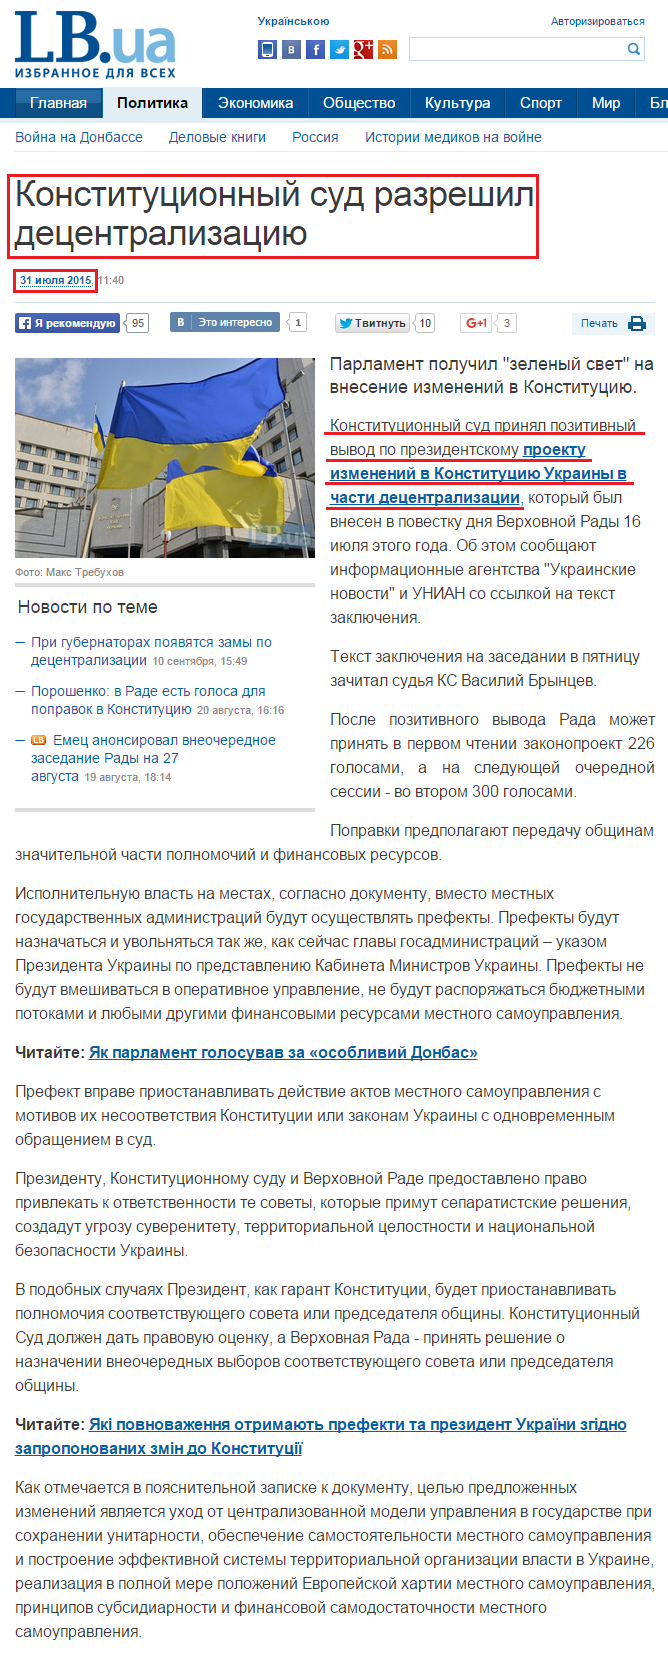 http://lb.ua/news/2015/07/31/312433_konstitutsionniy_sud_razreshil.html 